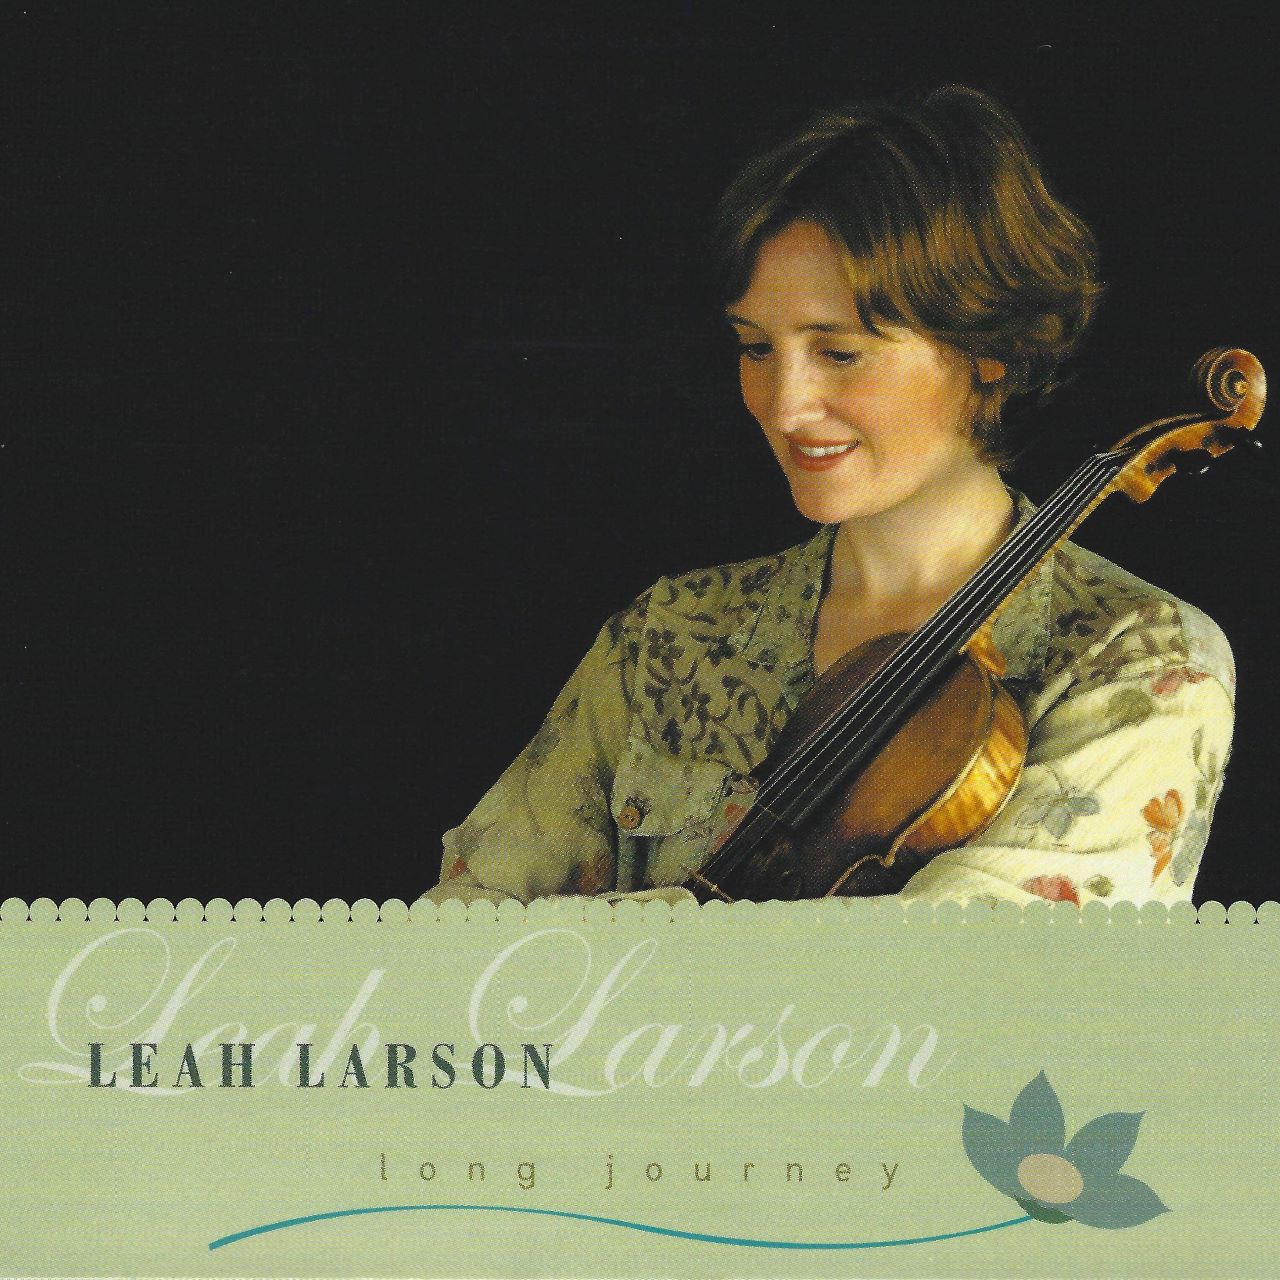 Leah Larson – Long Journey cover album